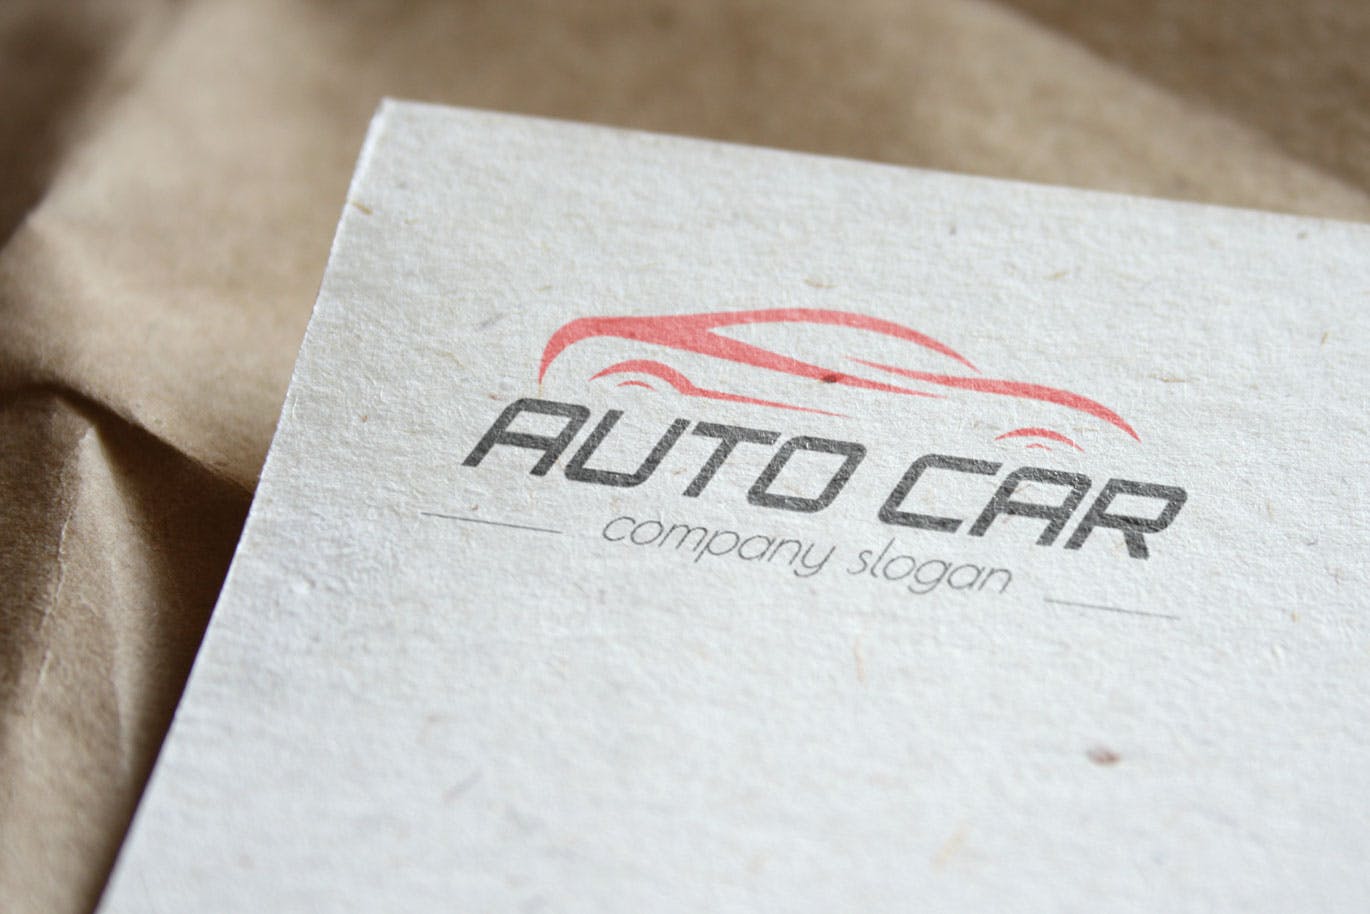 汽车相关企业品牌Logo设计素材库精选模板 Auto Car Business Logo Template插图(3)